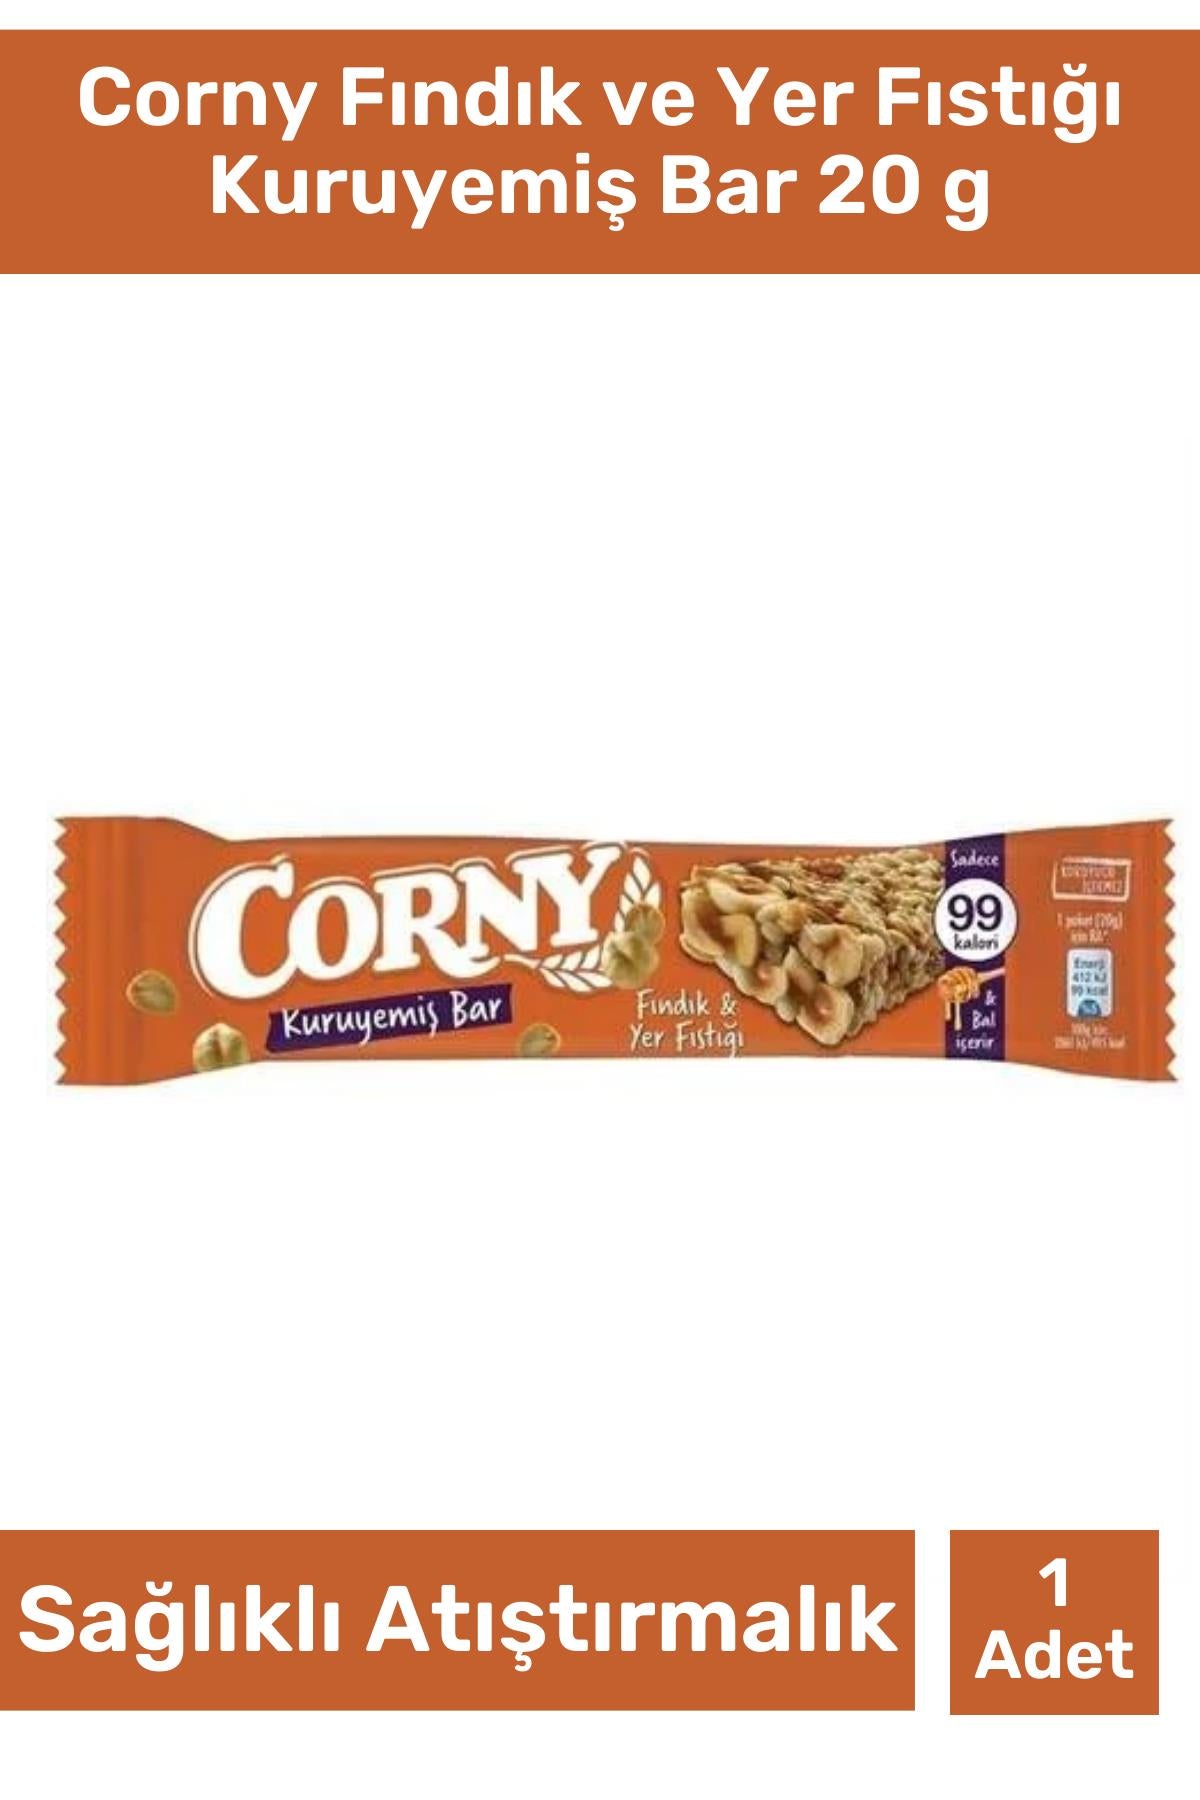 Corny Fındık ve Yer Fıstığı Kuruyemiş Bar 20 g